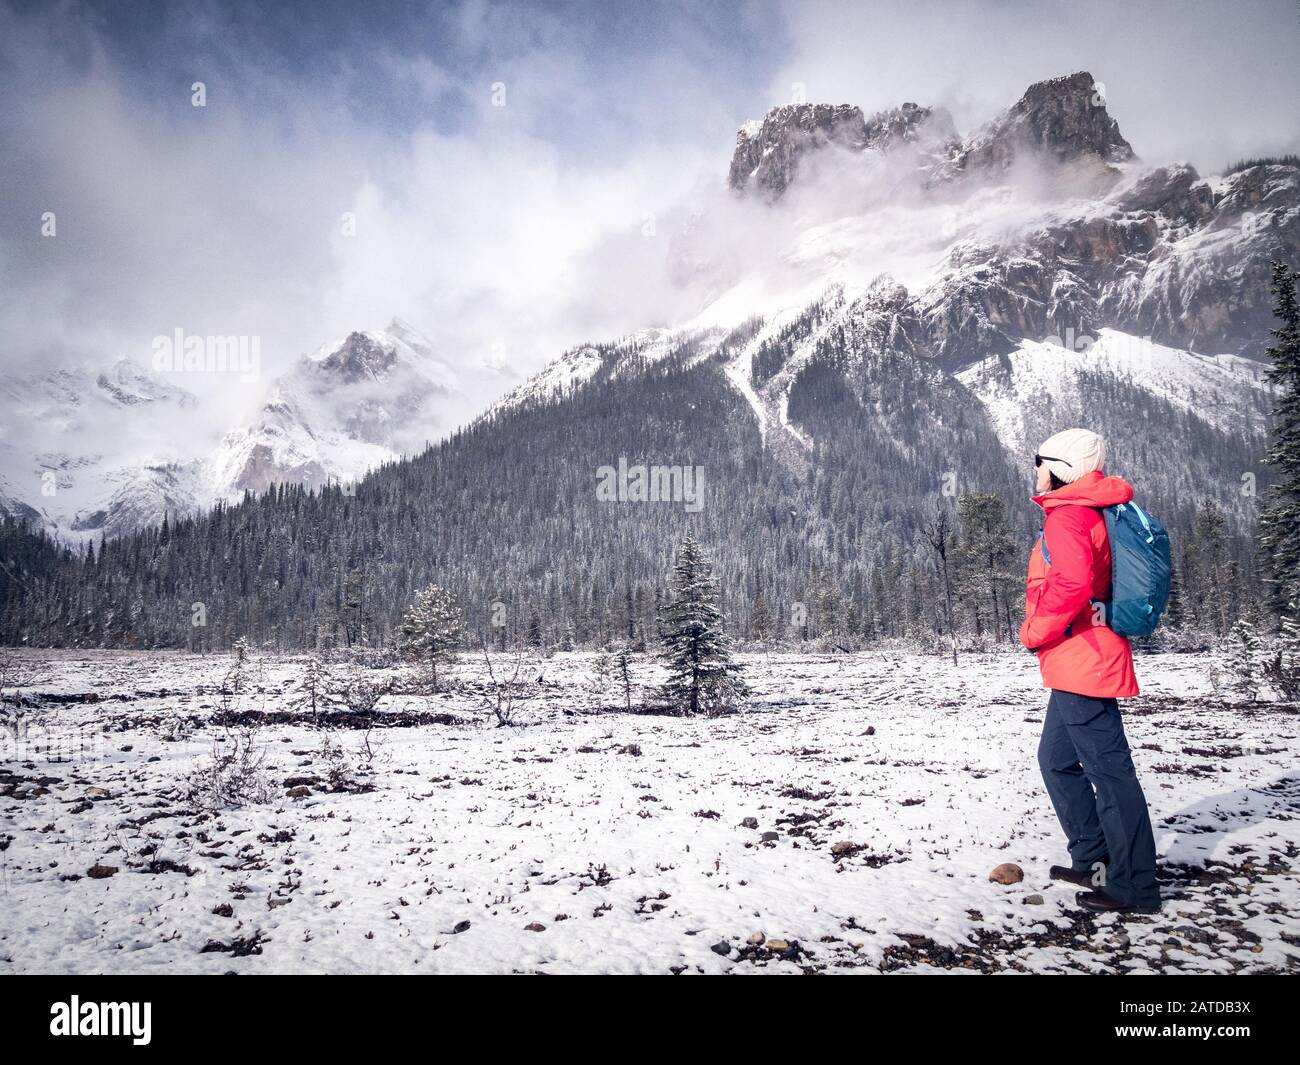 Randonneur féminin regardant la vue sur la montagne, parc national Banff, Alberta, Canada Banque D'Images